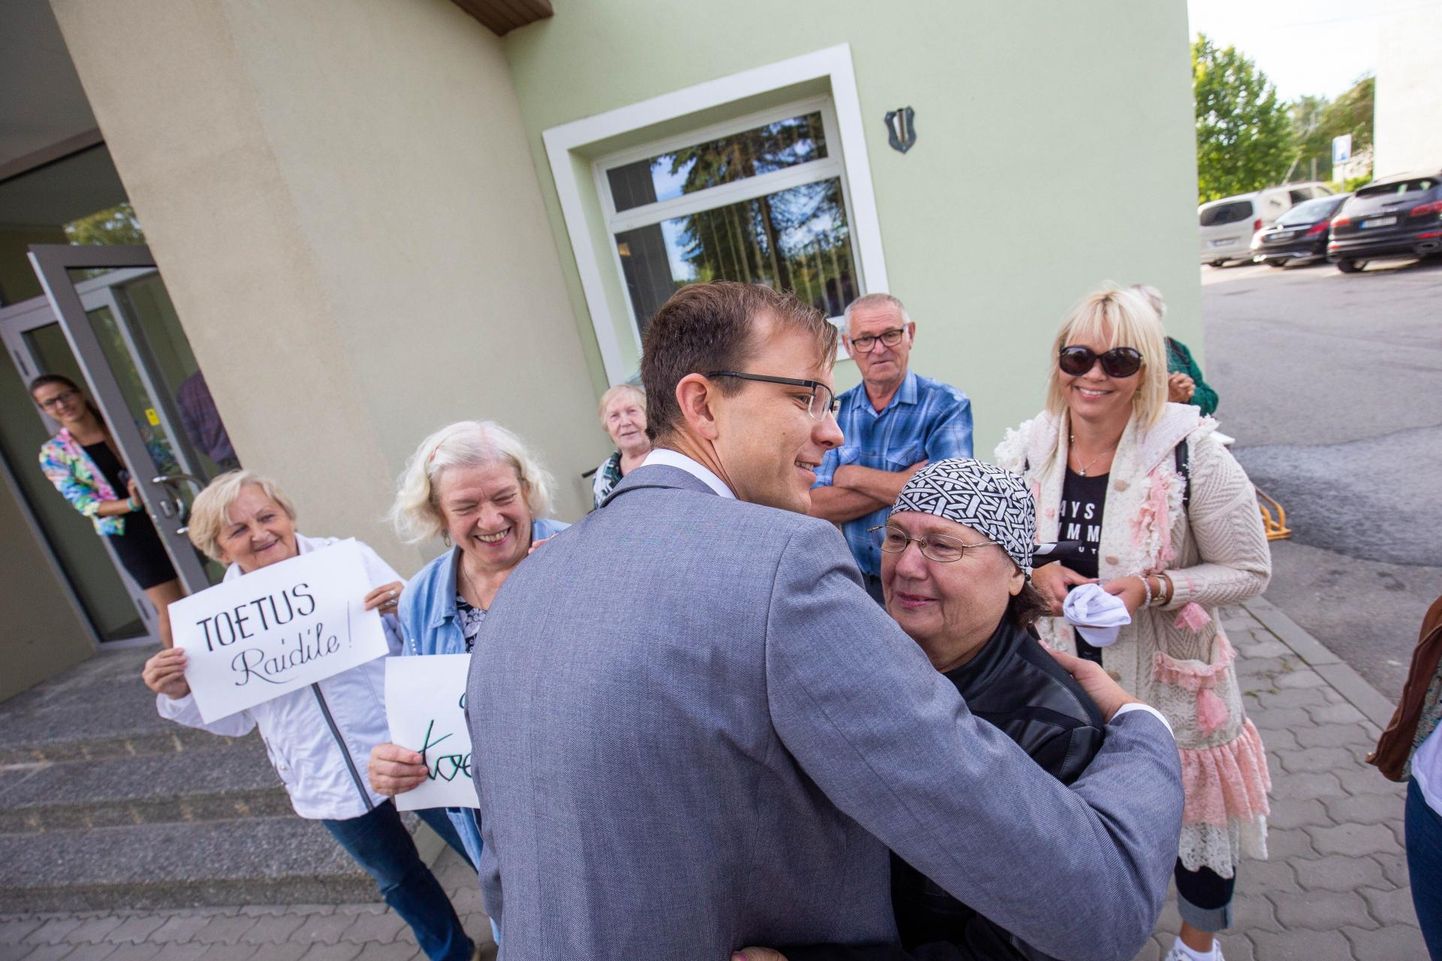 Opositsioon avaldas Järva vallavanemale Rait Pihelgale umbusaldust ka aasta tagasi. Siis saabusid volikogu istungitele plakatitega ka vallavanema toetajad ja umbusaldus kukkus läbi.